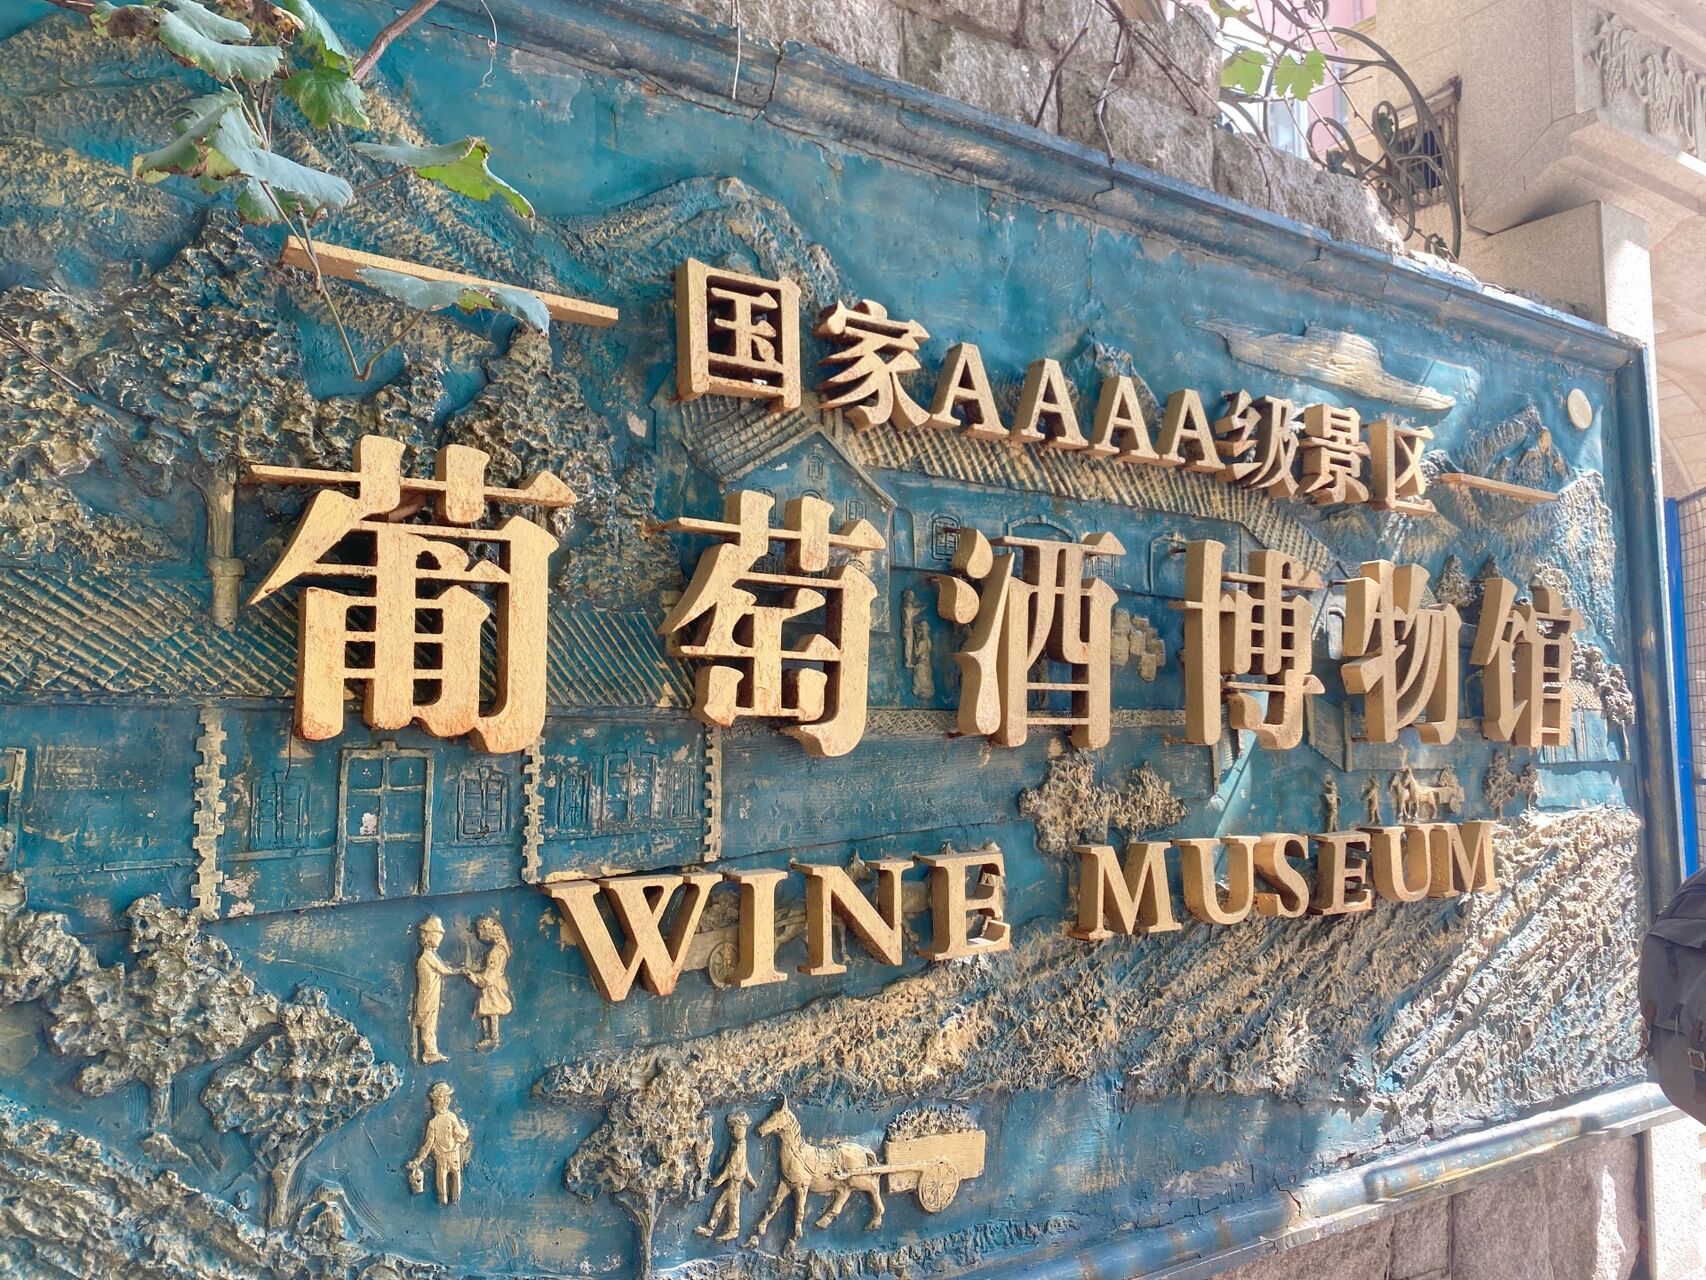 青岛/青岛葡萄酒博物馆/小众博物馆 说起葡萄酒博物馆,很多人应该都不